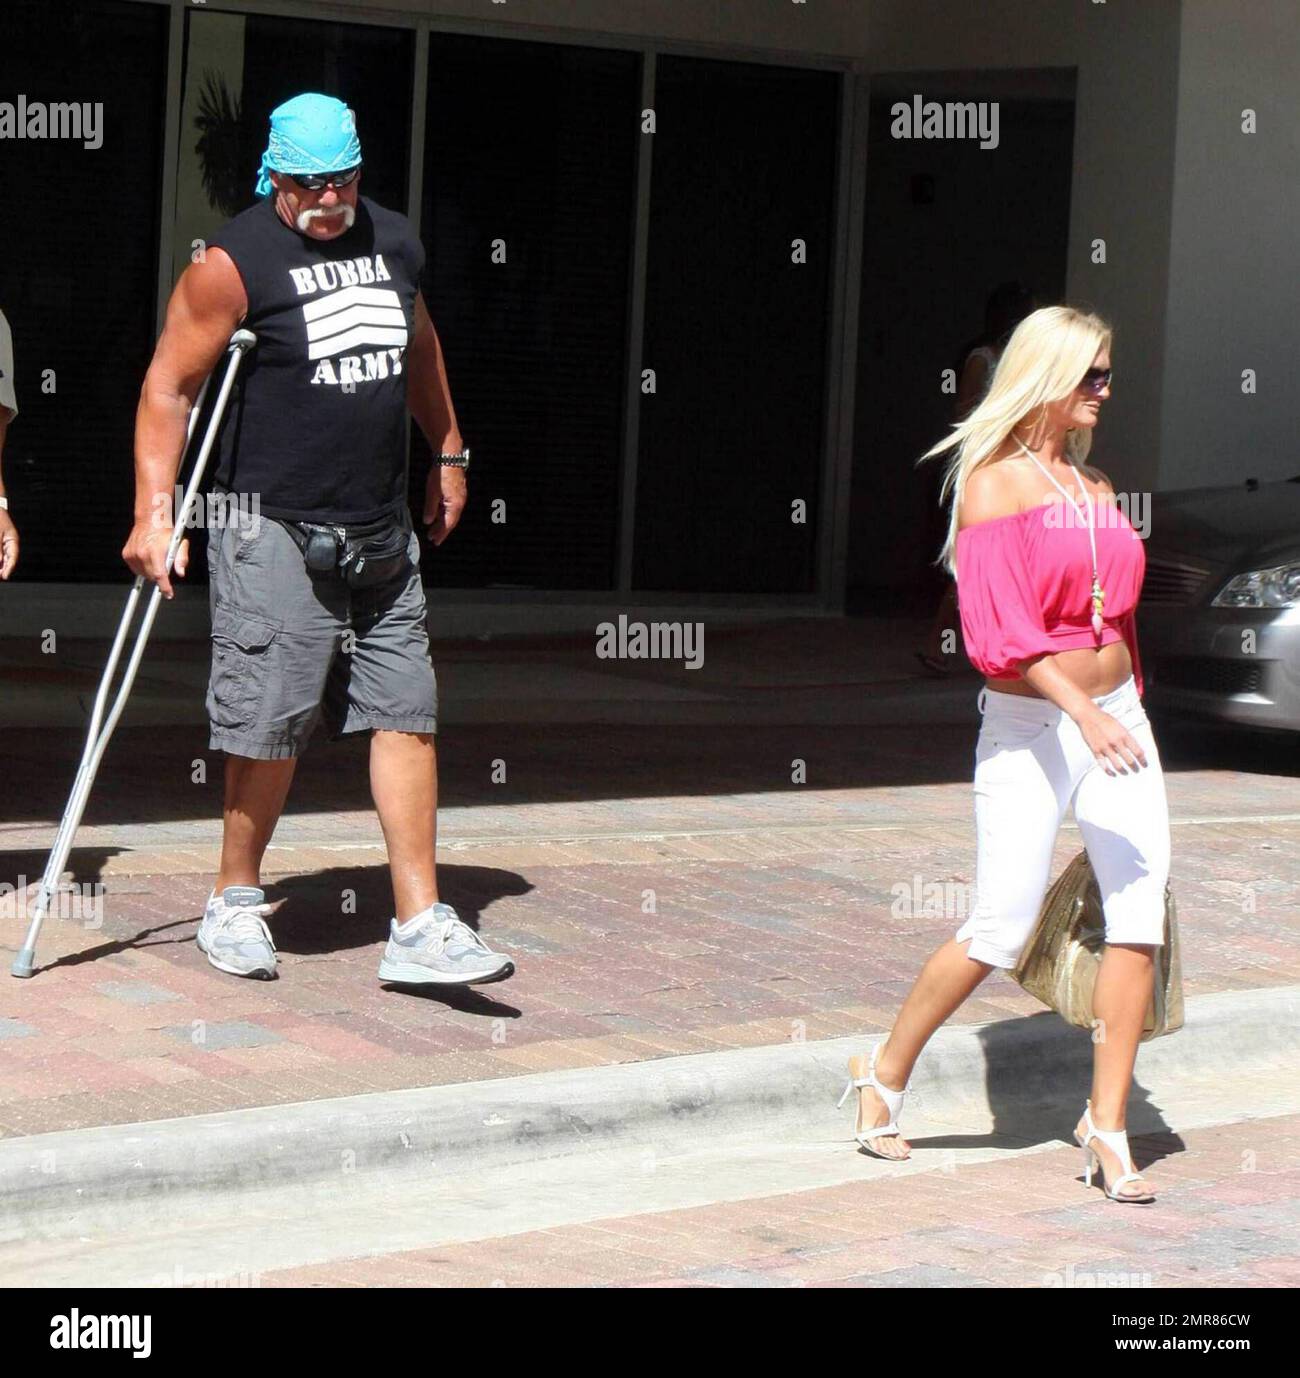 Esclusivo!! Hulk Hogan e la sua giovane fidanzata Jennifer McDaniel si  trasferiscono a Calle Ocho. Hogan ha detto che sta carenando meglio dopo  l'intervento chirurgico alla schiena, nonostante richieda ancora l'uso di